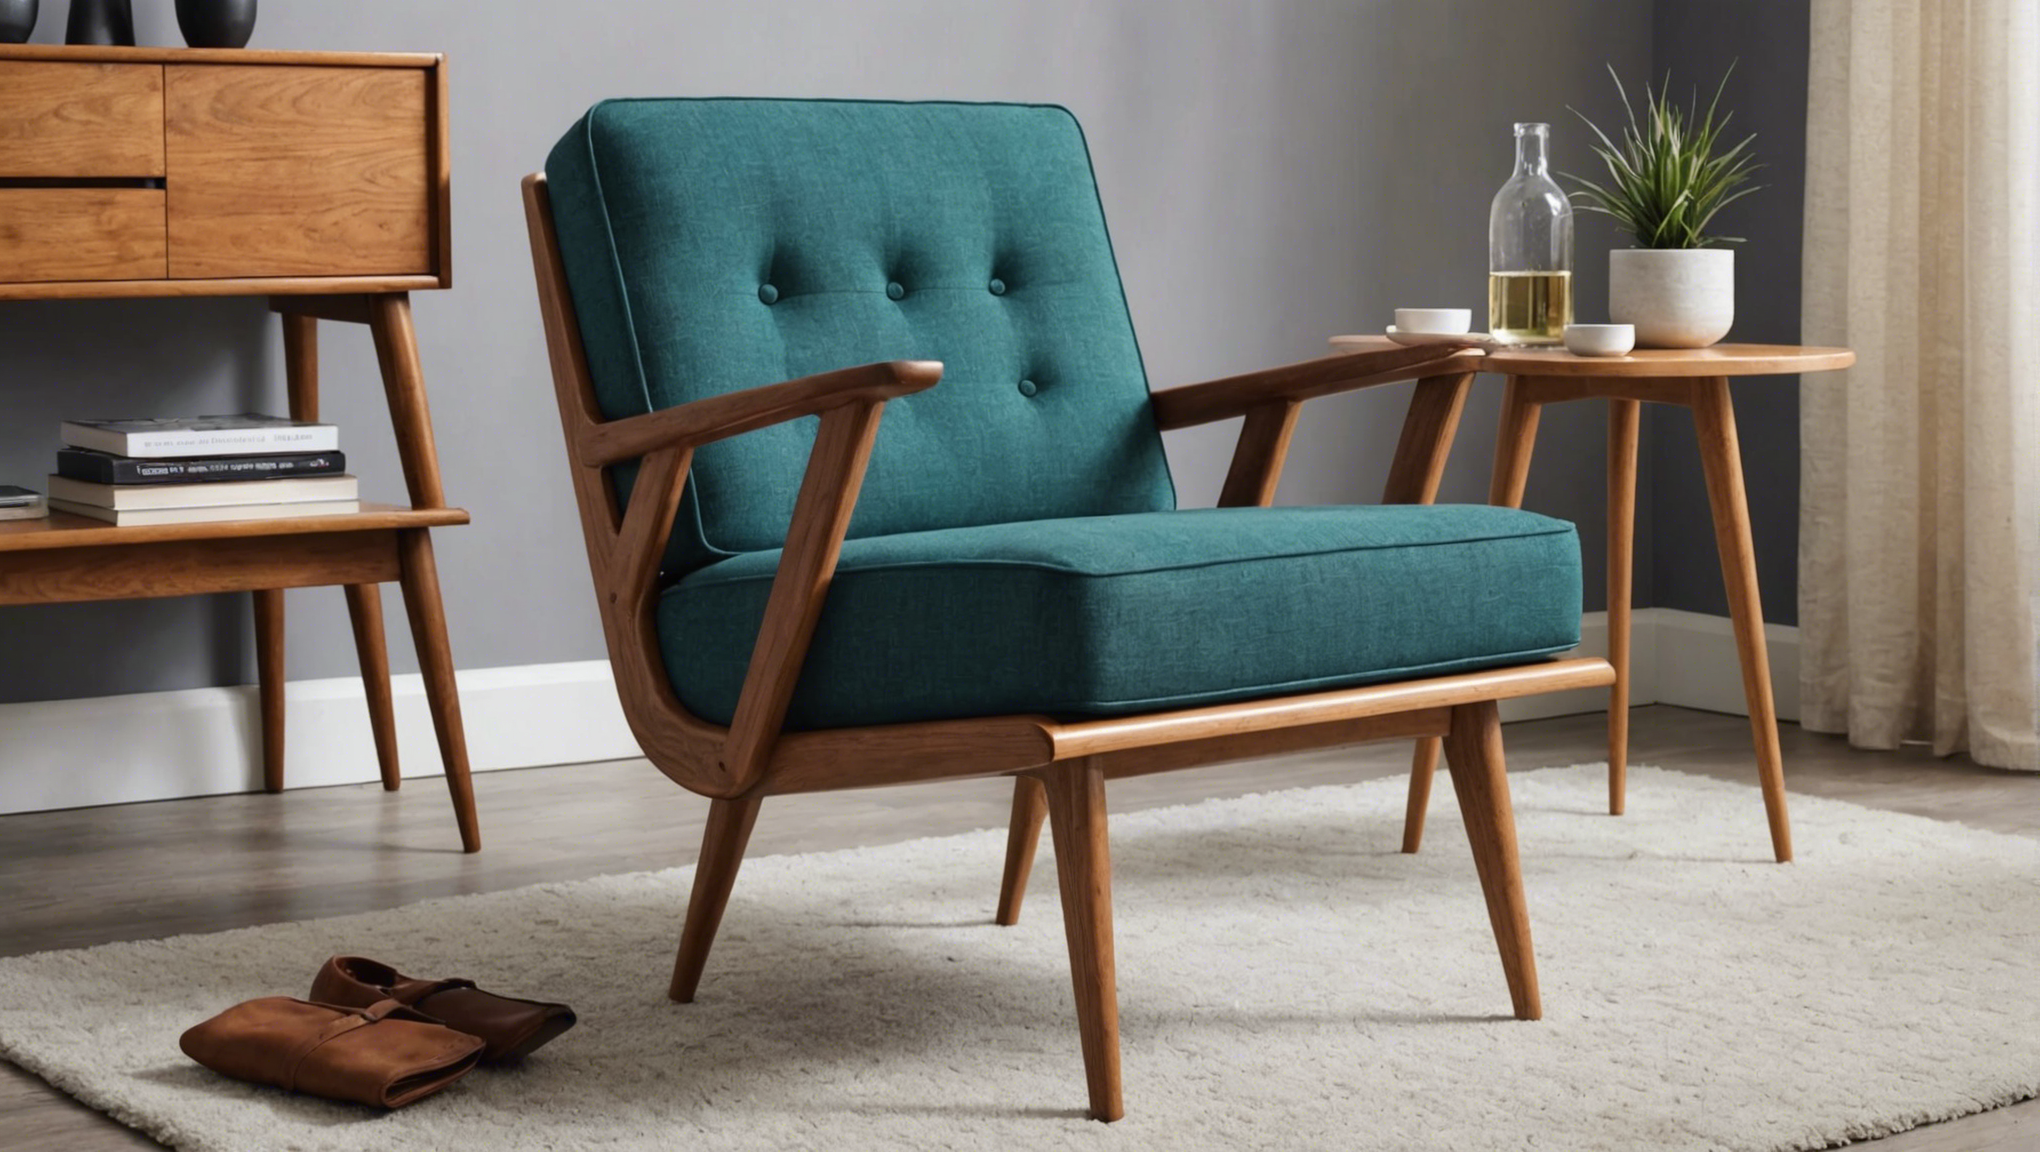 découvrez comment moderniser une chaise de style midcentury pour en faire un fauteuil d'appoint moderne dans ce projet diy. transformez votre intérieur avec cette idée de rénovation de meuble original.